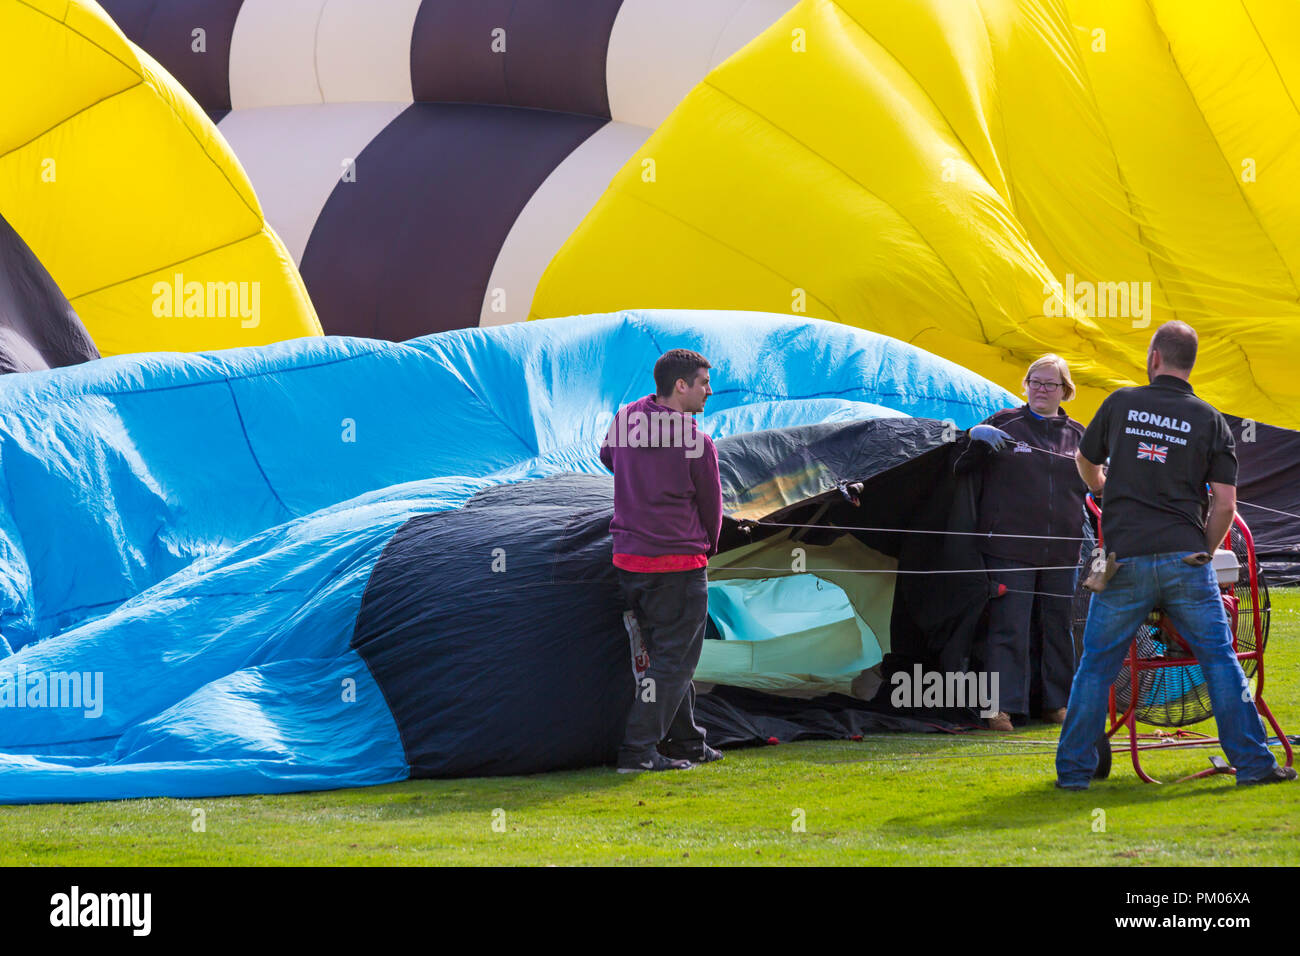 Ronald Balloon team préparation hot air balloon au ciel de Longleat Safari, Wiltshire, Royaume-Uni en septembre Banque D'Images